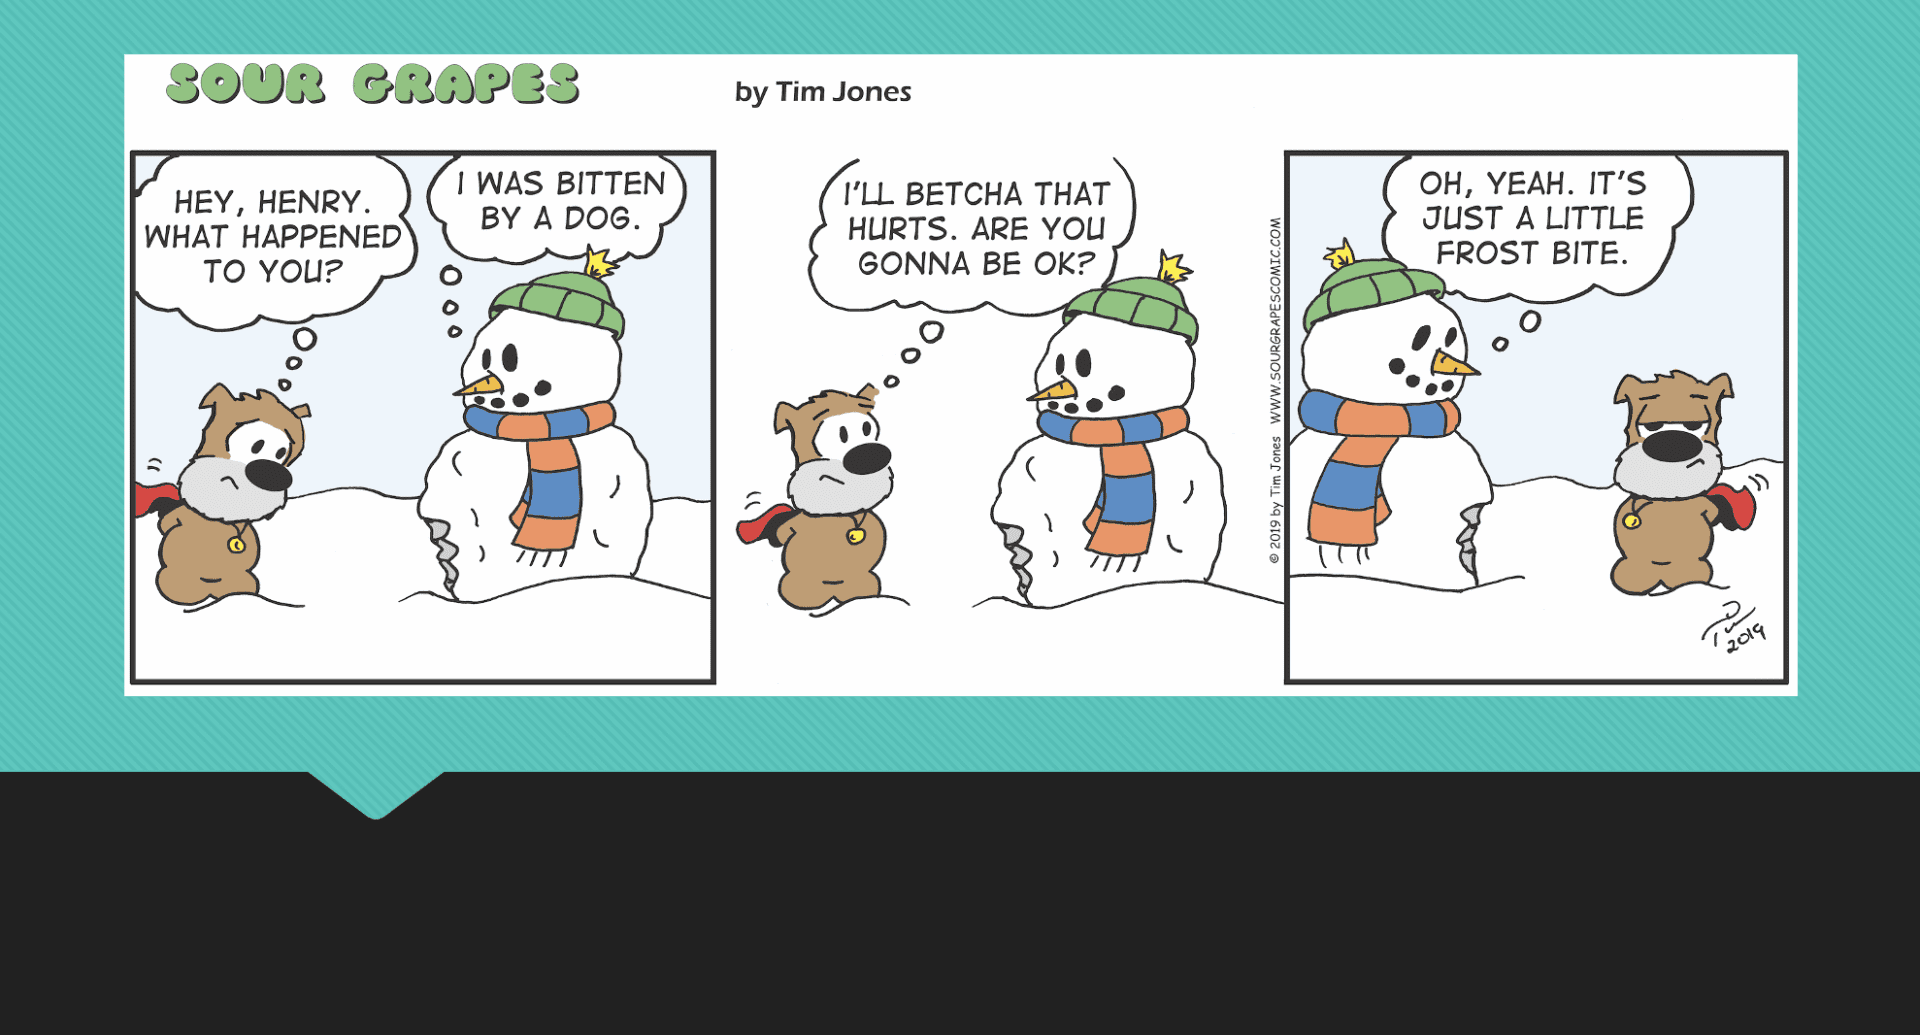 A comic strip with a snowman and a teddy bear.